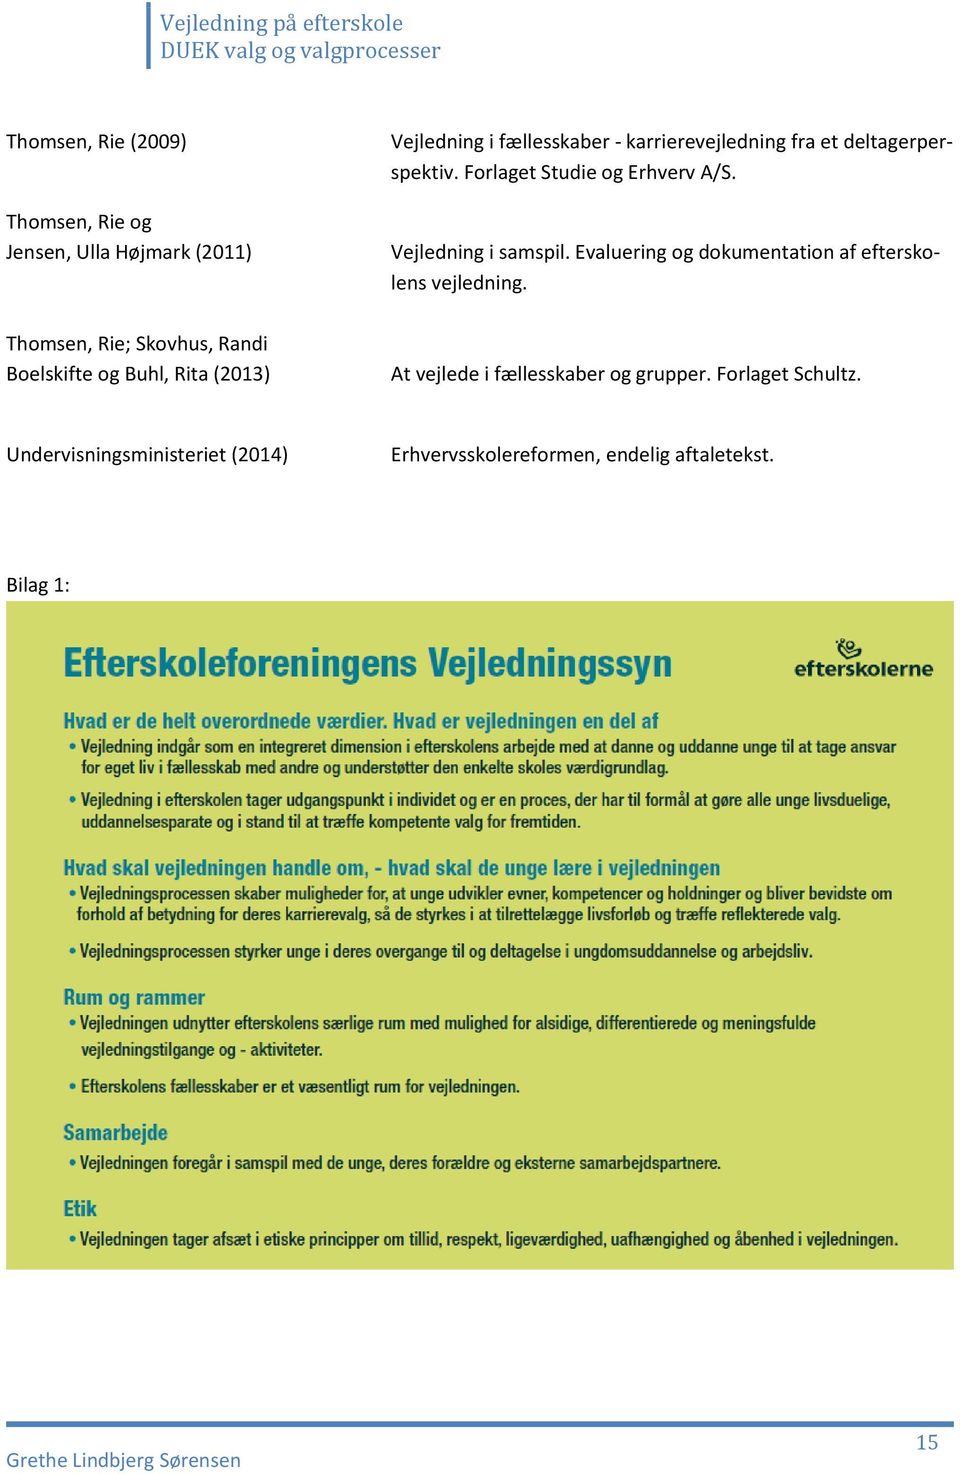 Forlaget Studie og Erhverv A/S. Vejledning i samspil. Evaluering og dokumentation af efterskolens vejledning.